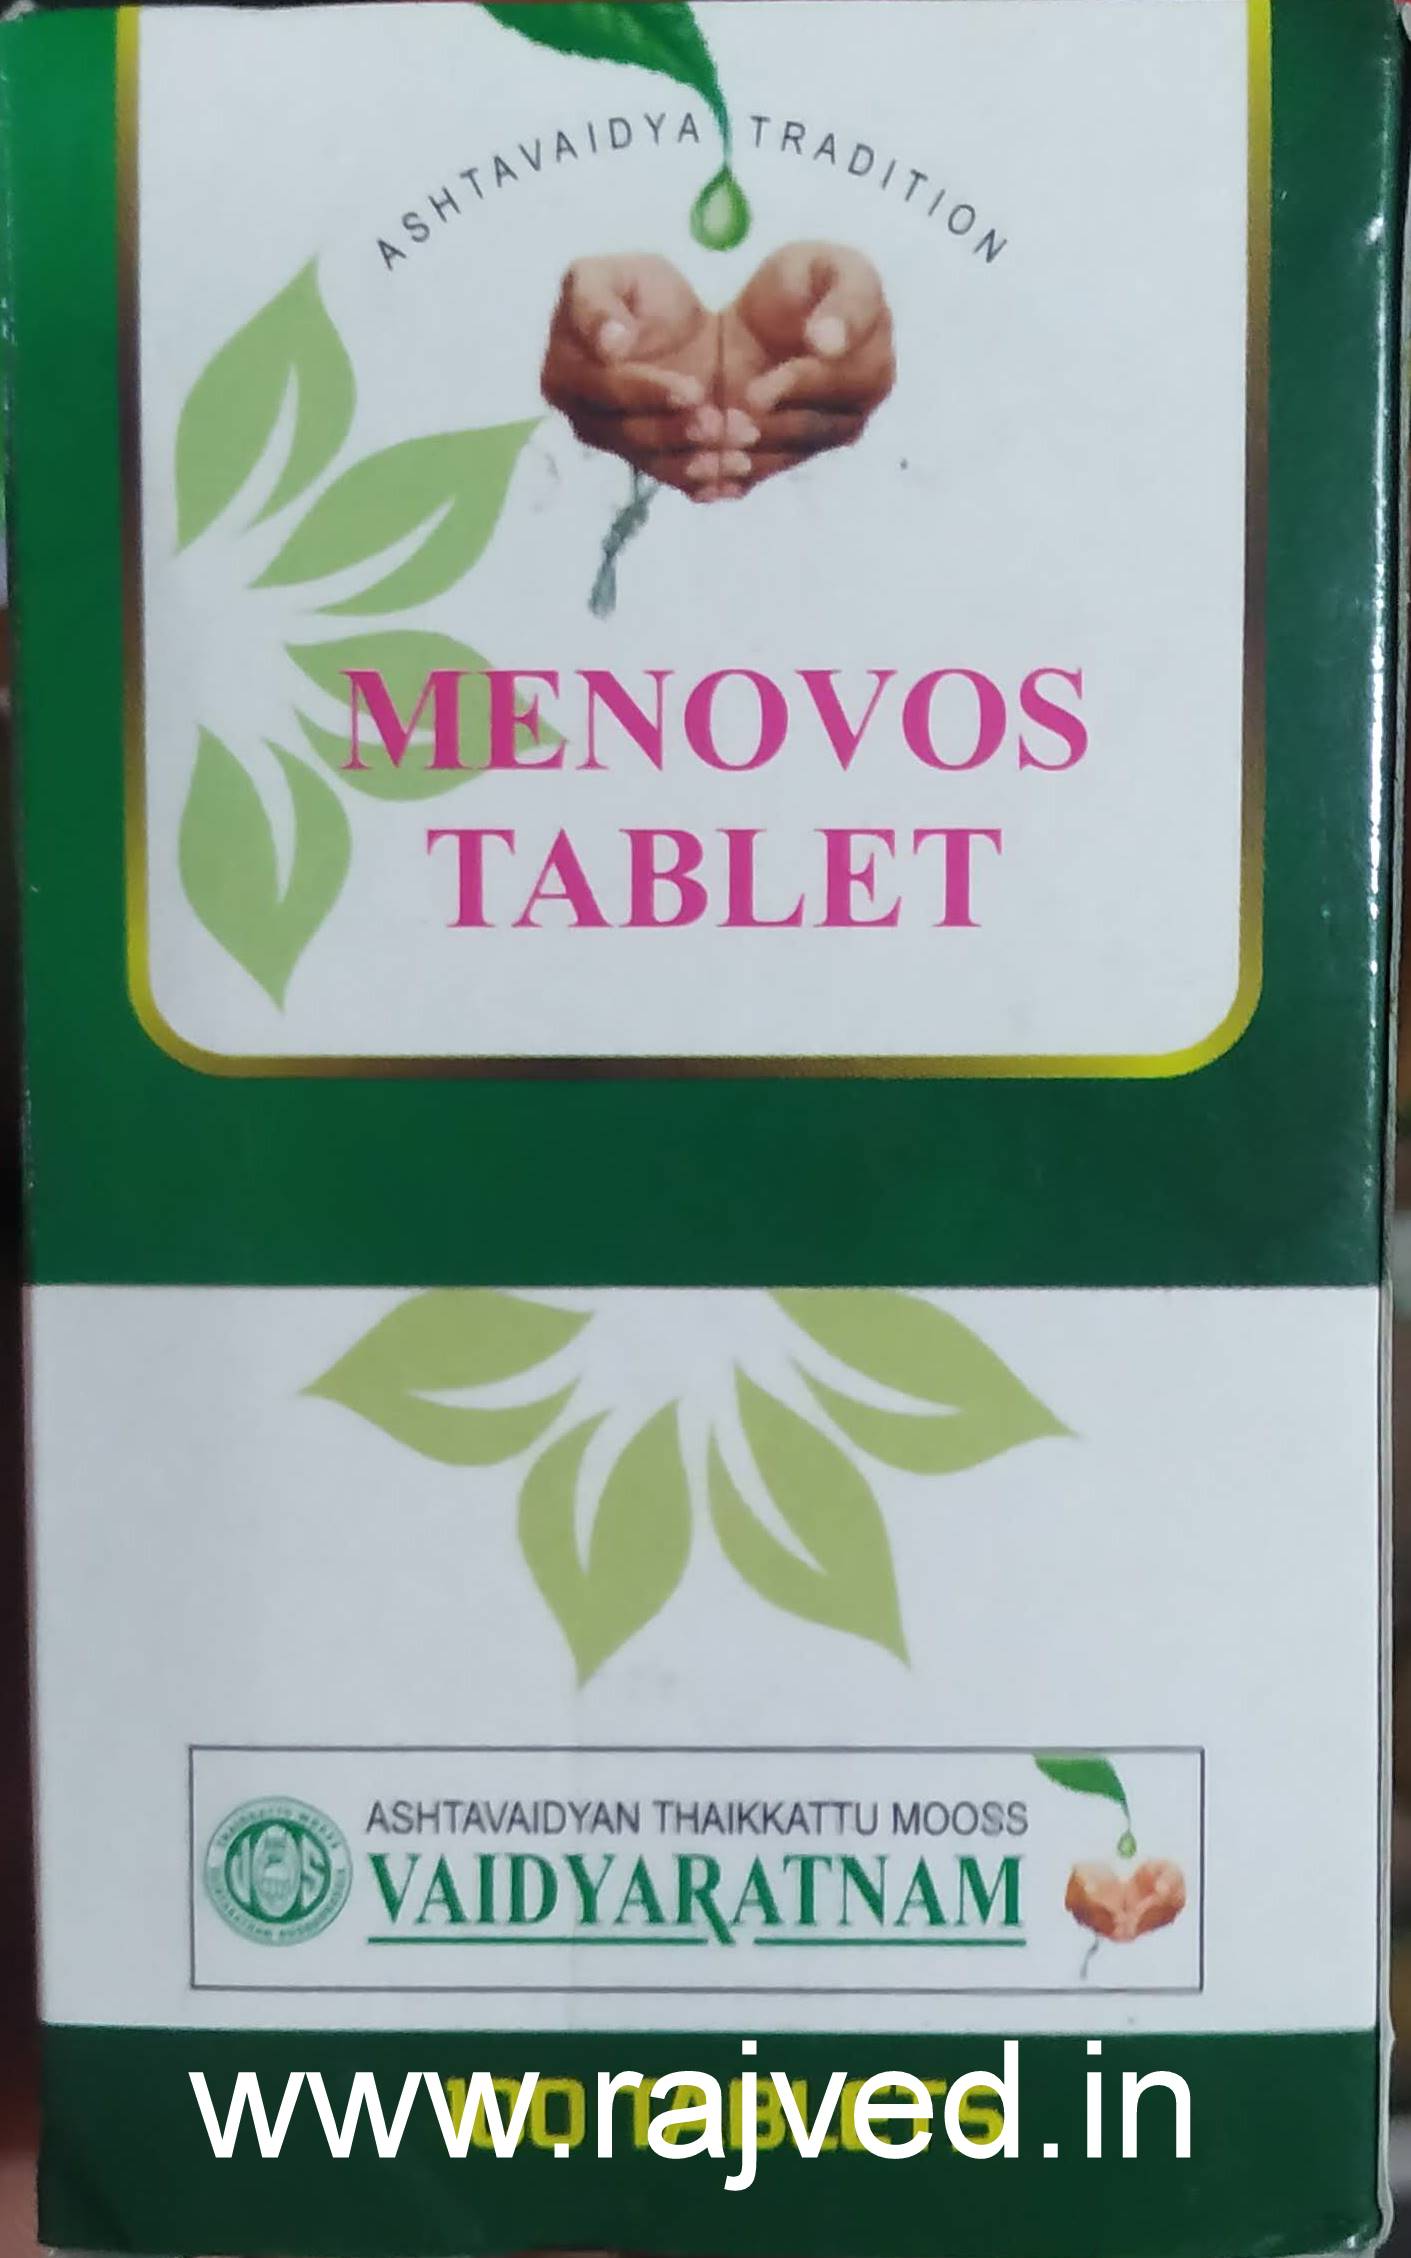 menovos tablets vaidyaratnam 100tab upto 15% off